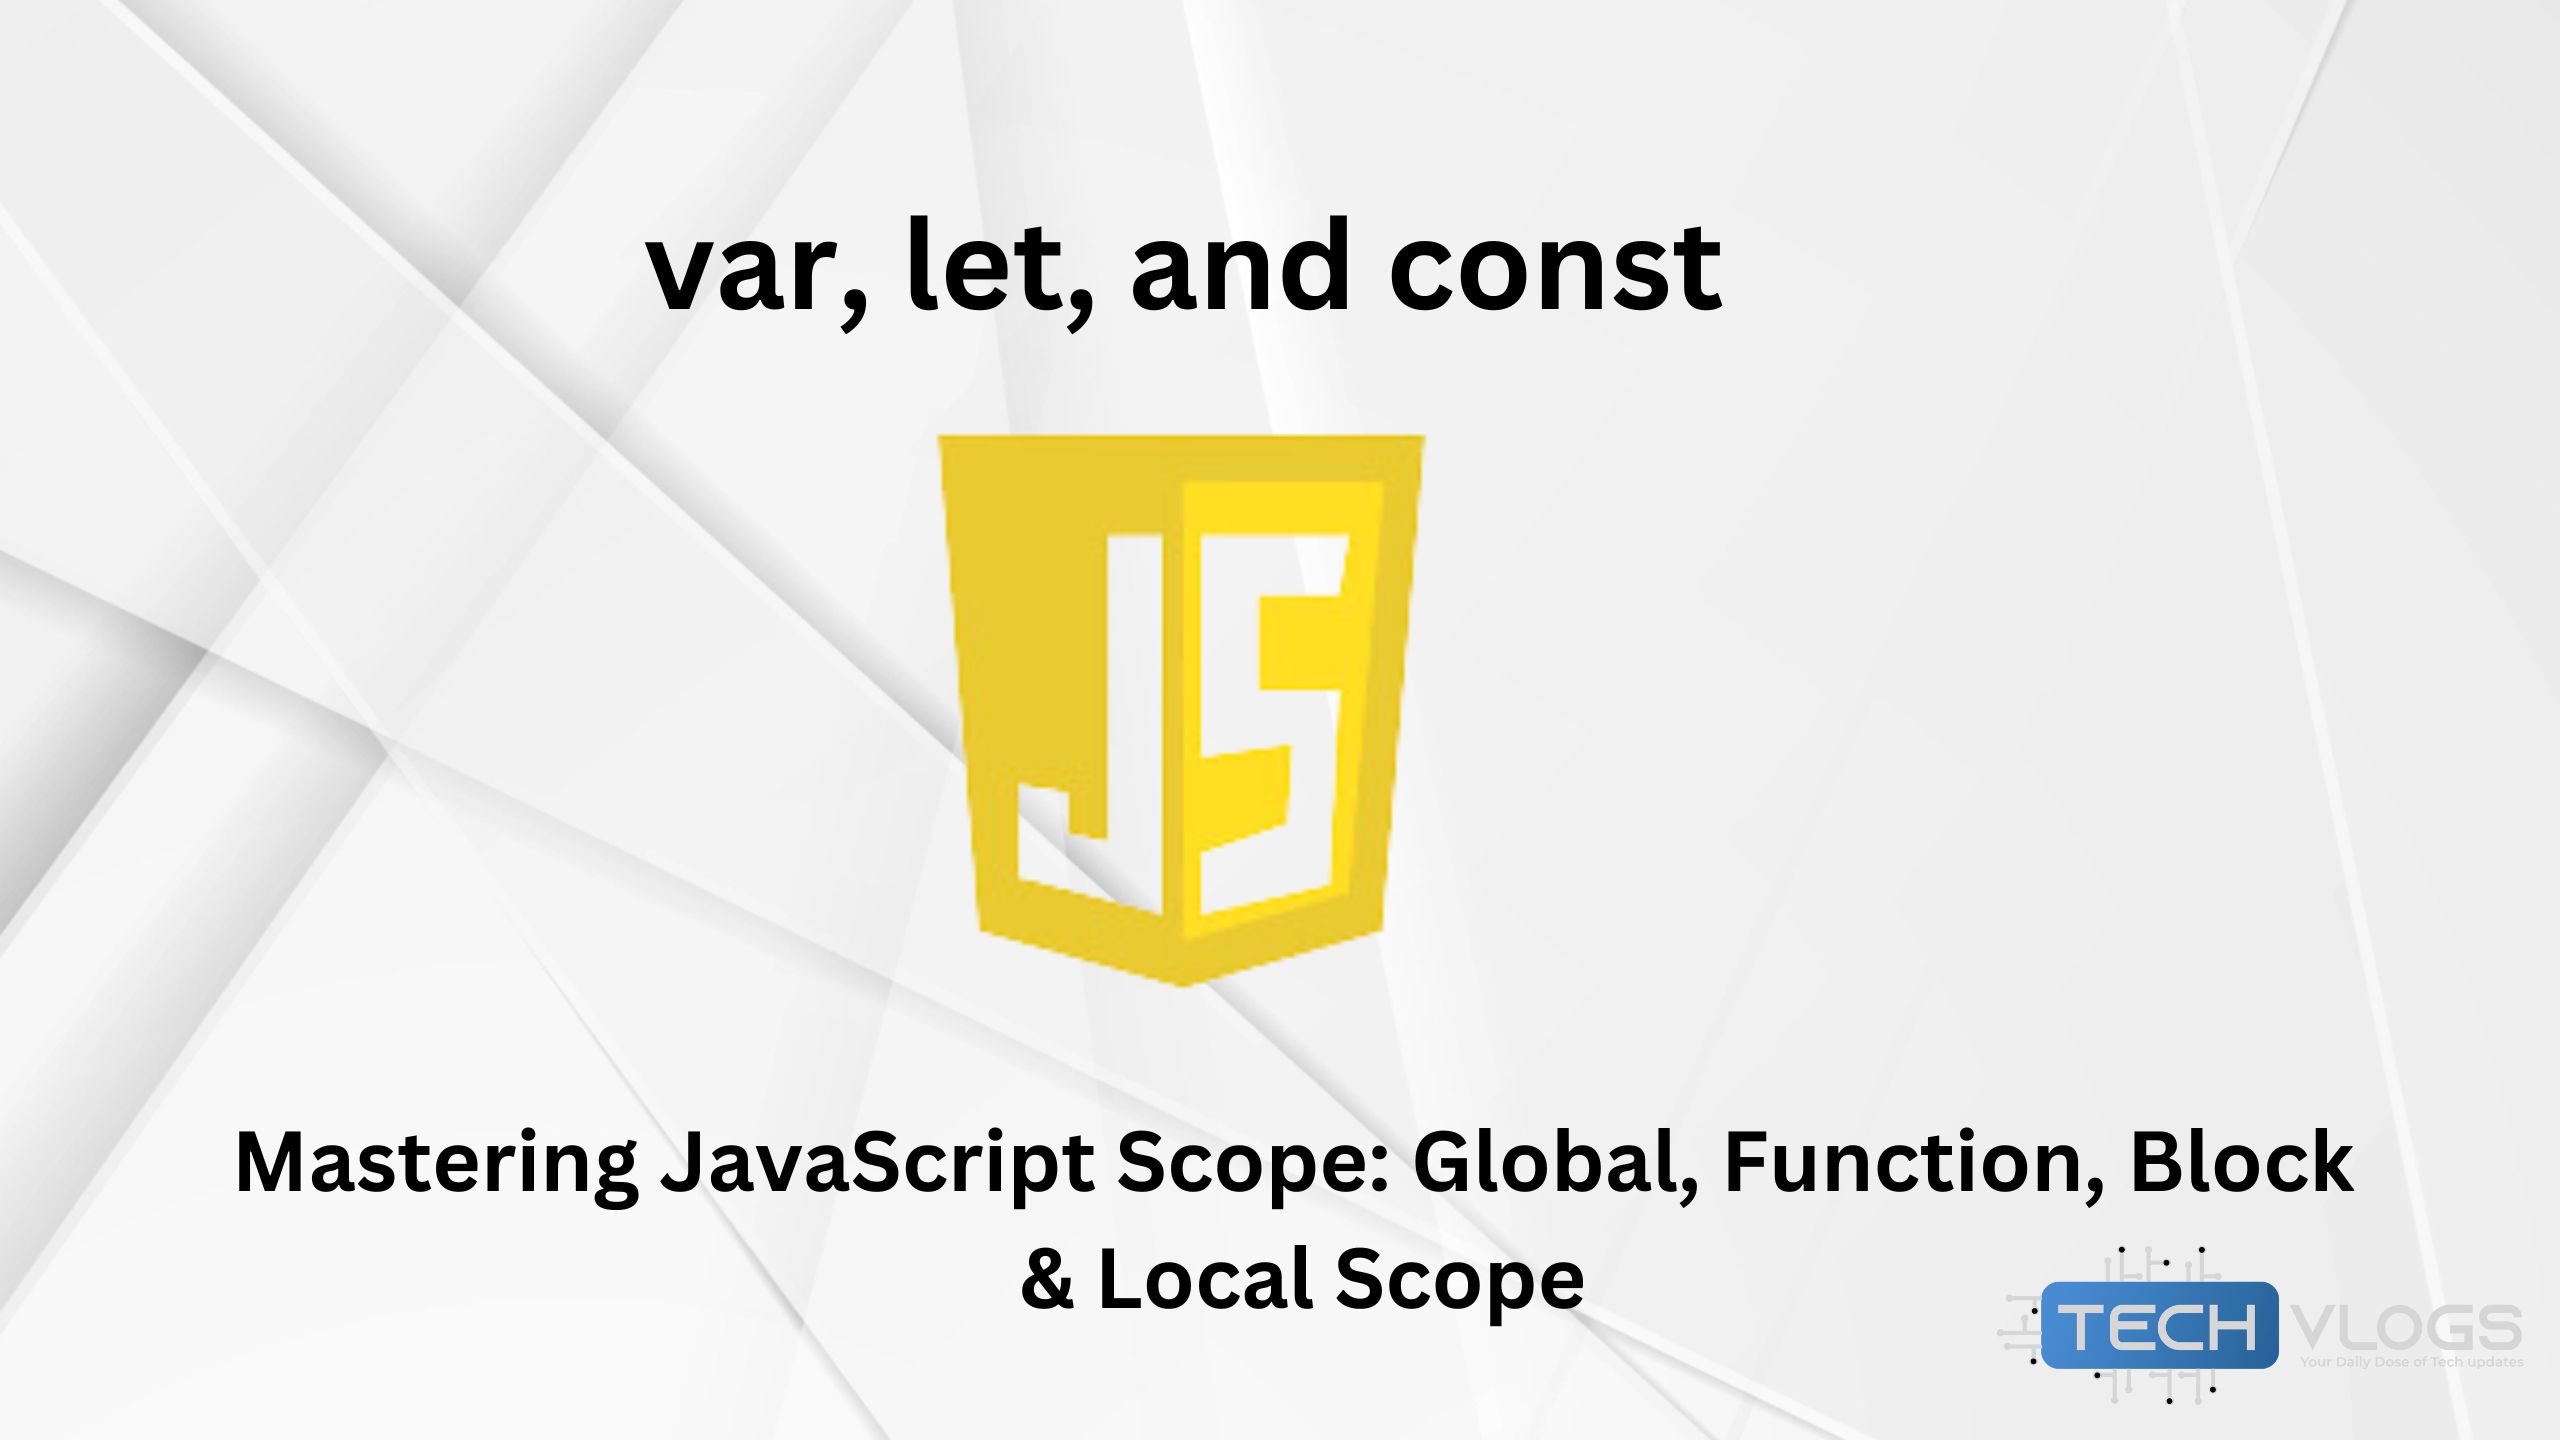 JavaScript scope